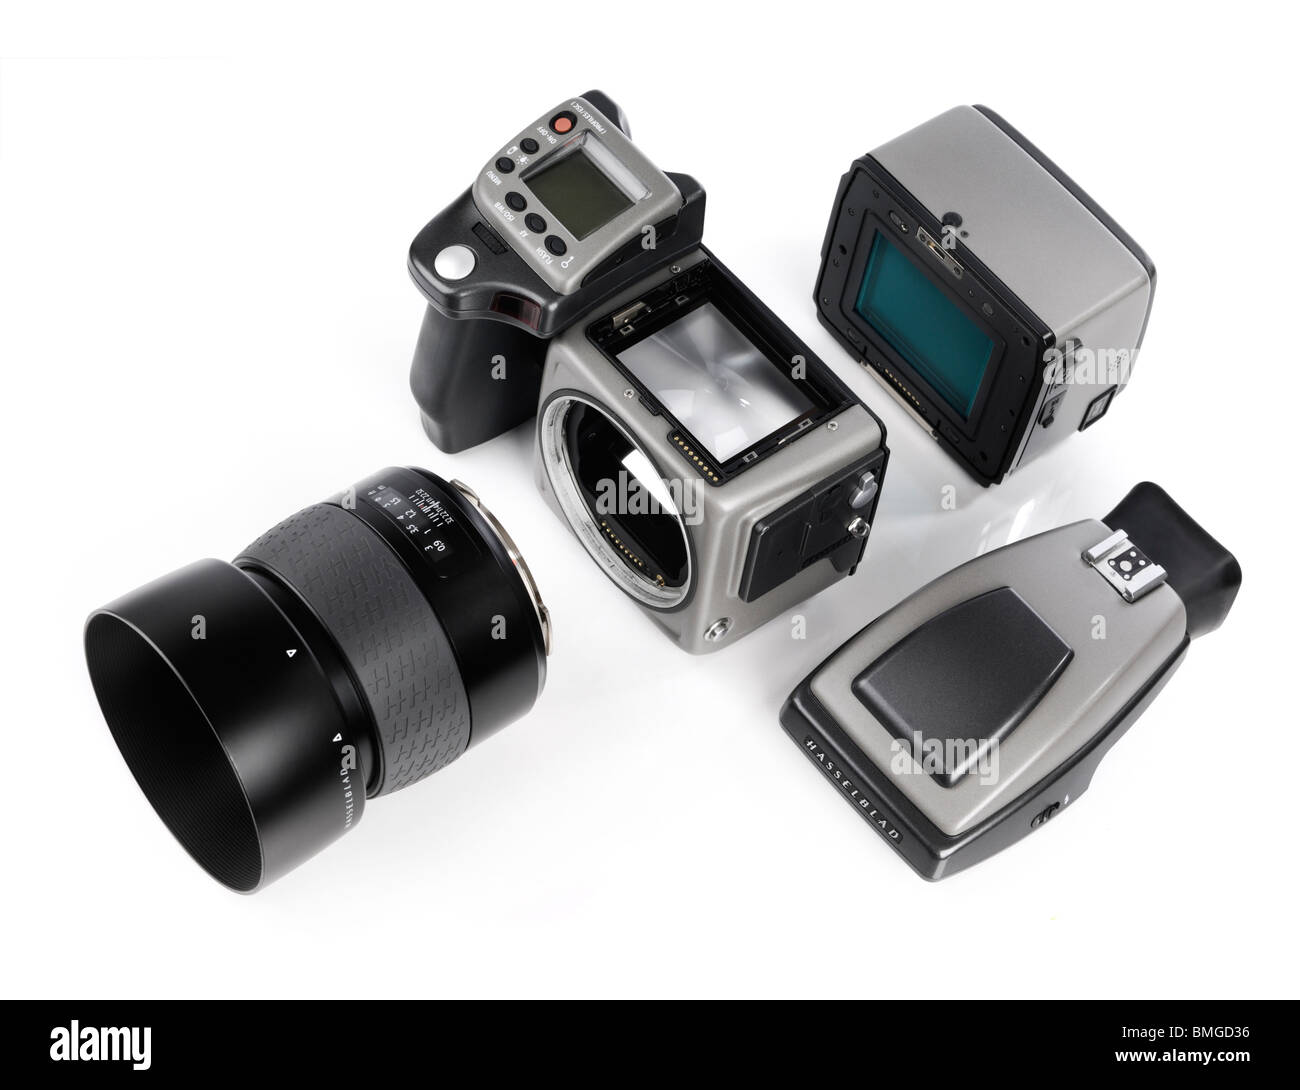 Hasselblad H3DII-39 appareil photo numérique moyen format avec dos numérique, l'objectif et le viseur détaché de l'appareil photo Banque D'Images